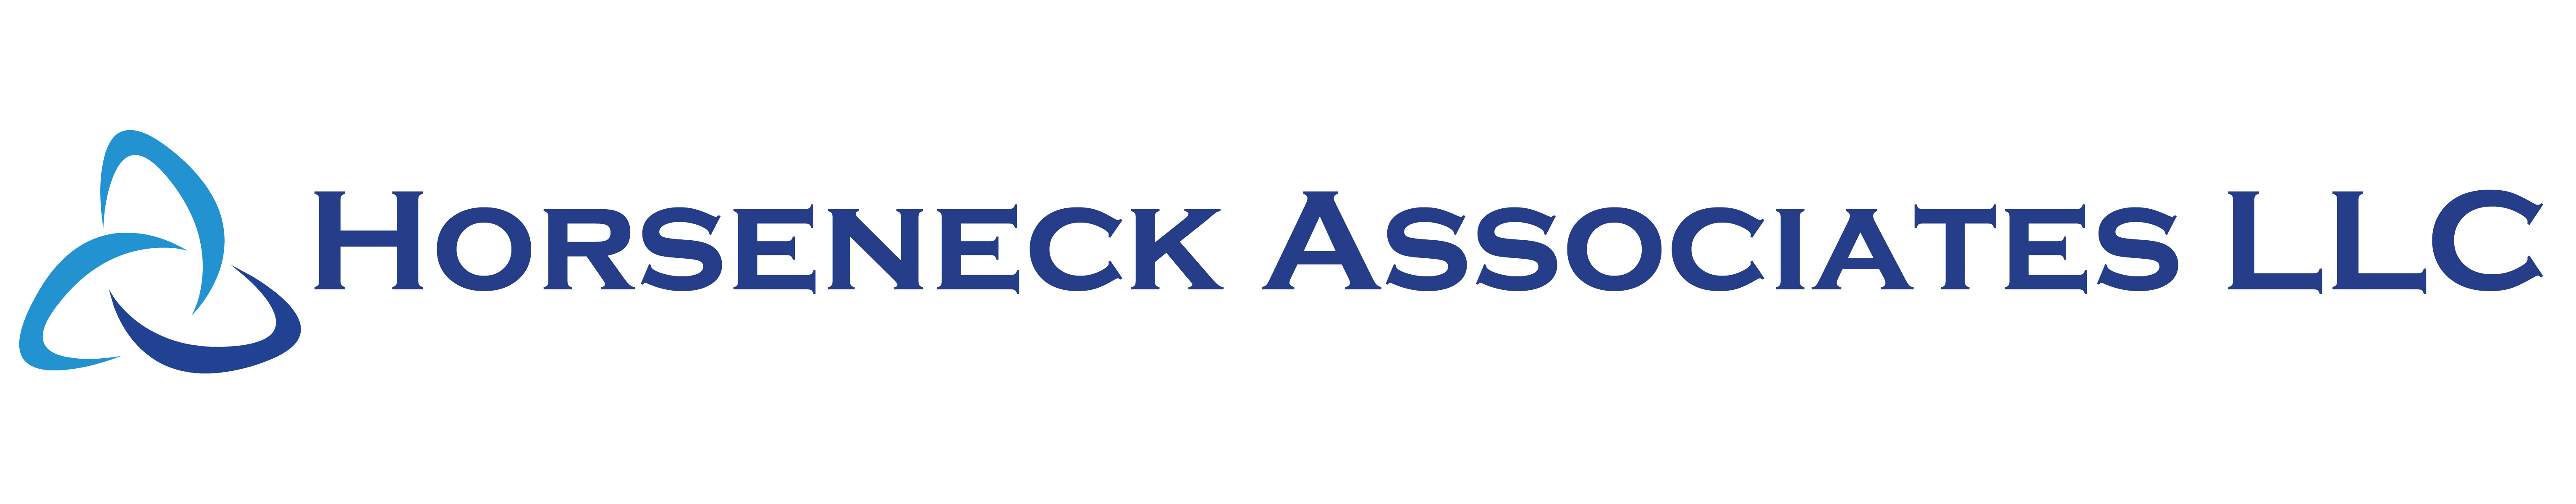 Horseneck Associates LLC